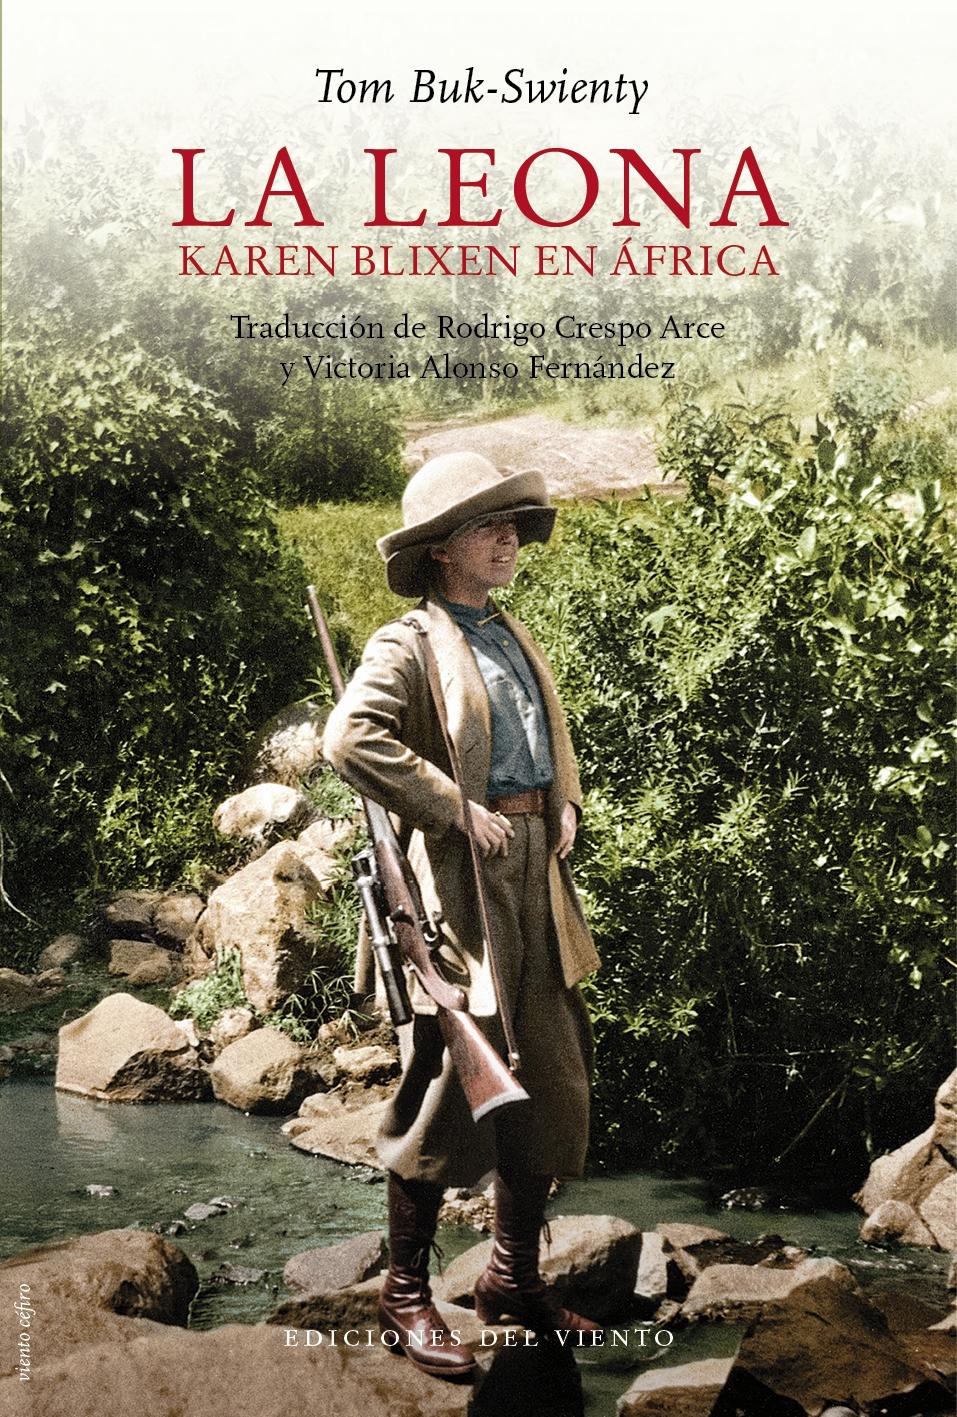 La Leona "Karen Blixen en Africa"